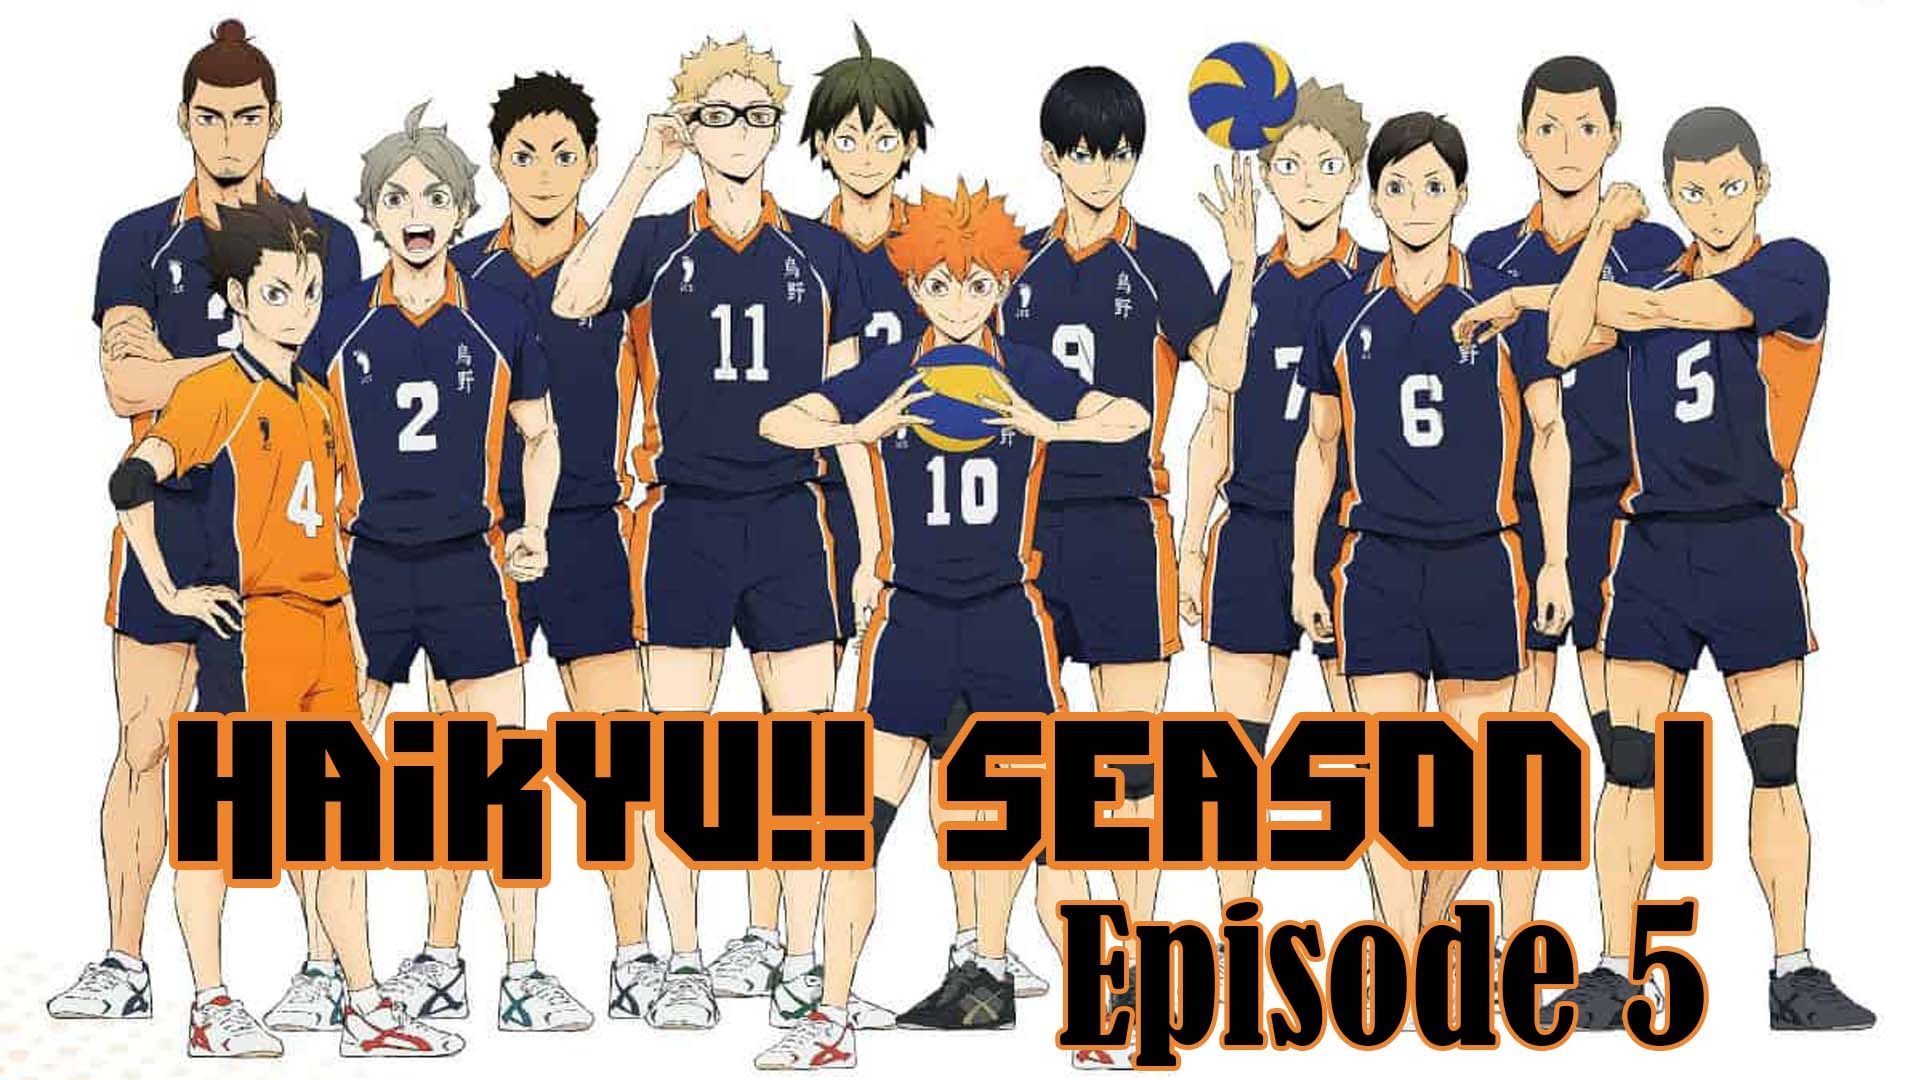 Watch Haikyu!! season 1 episode 26 streaming online